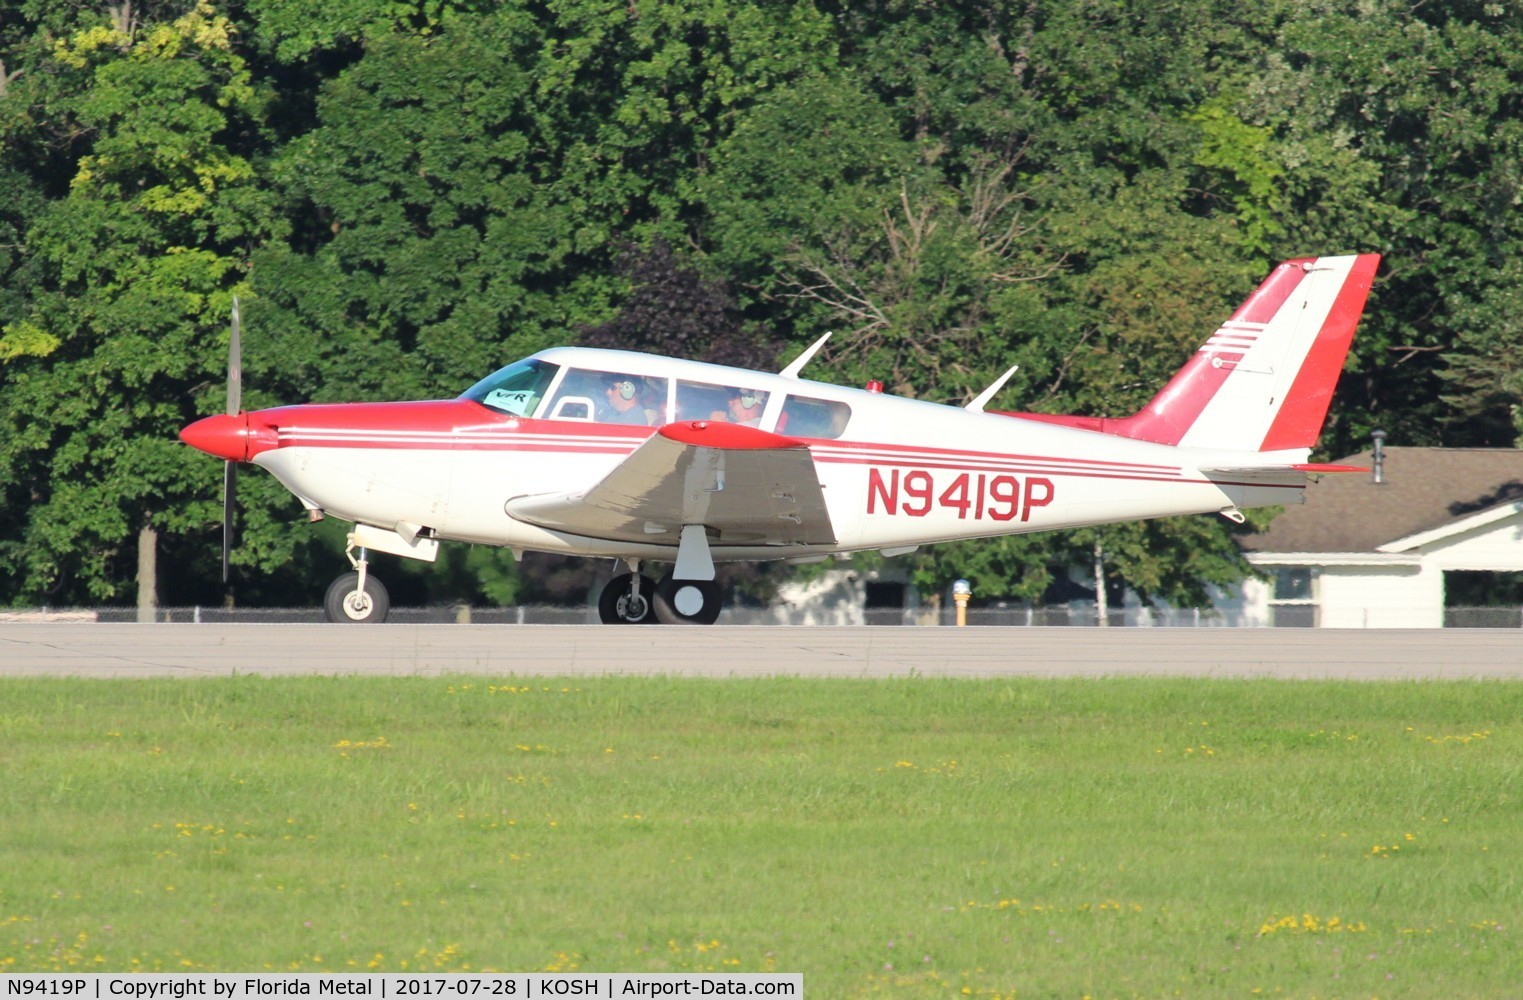 N9419P, 1969 Piper PA-24-260 Comanche C/N 24-4925, PA-24